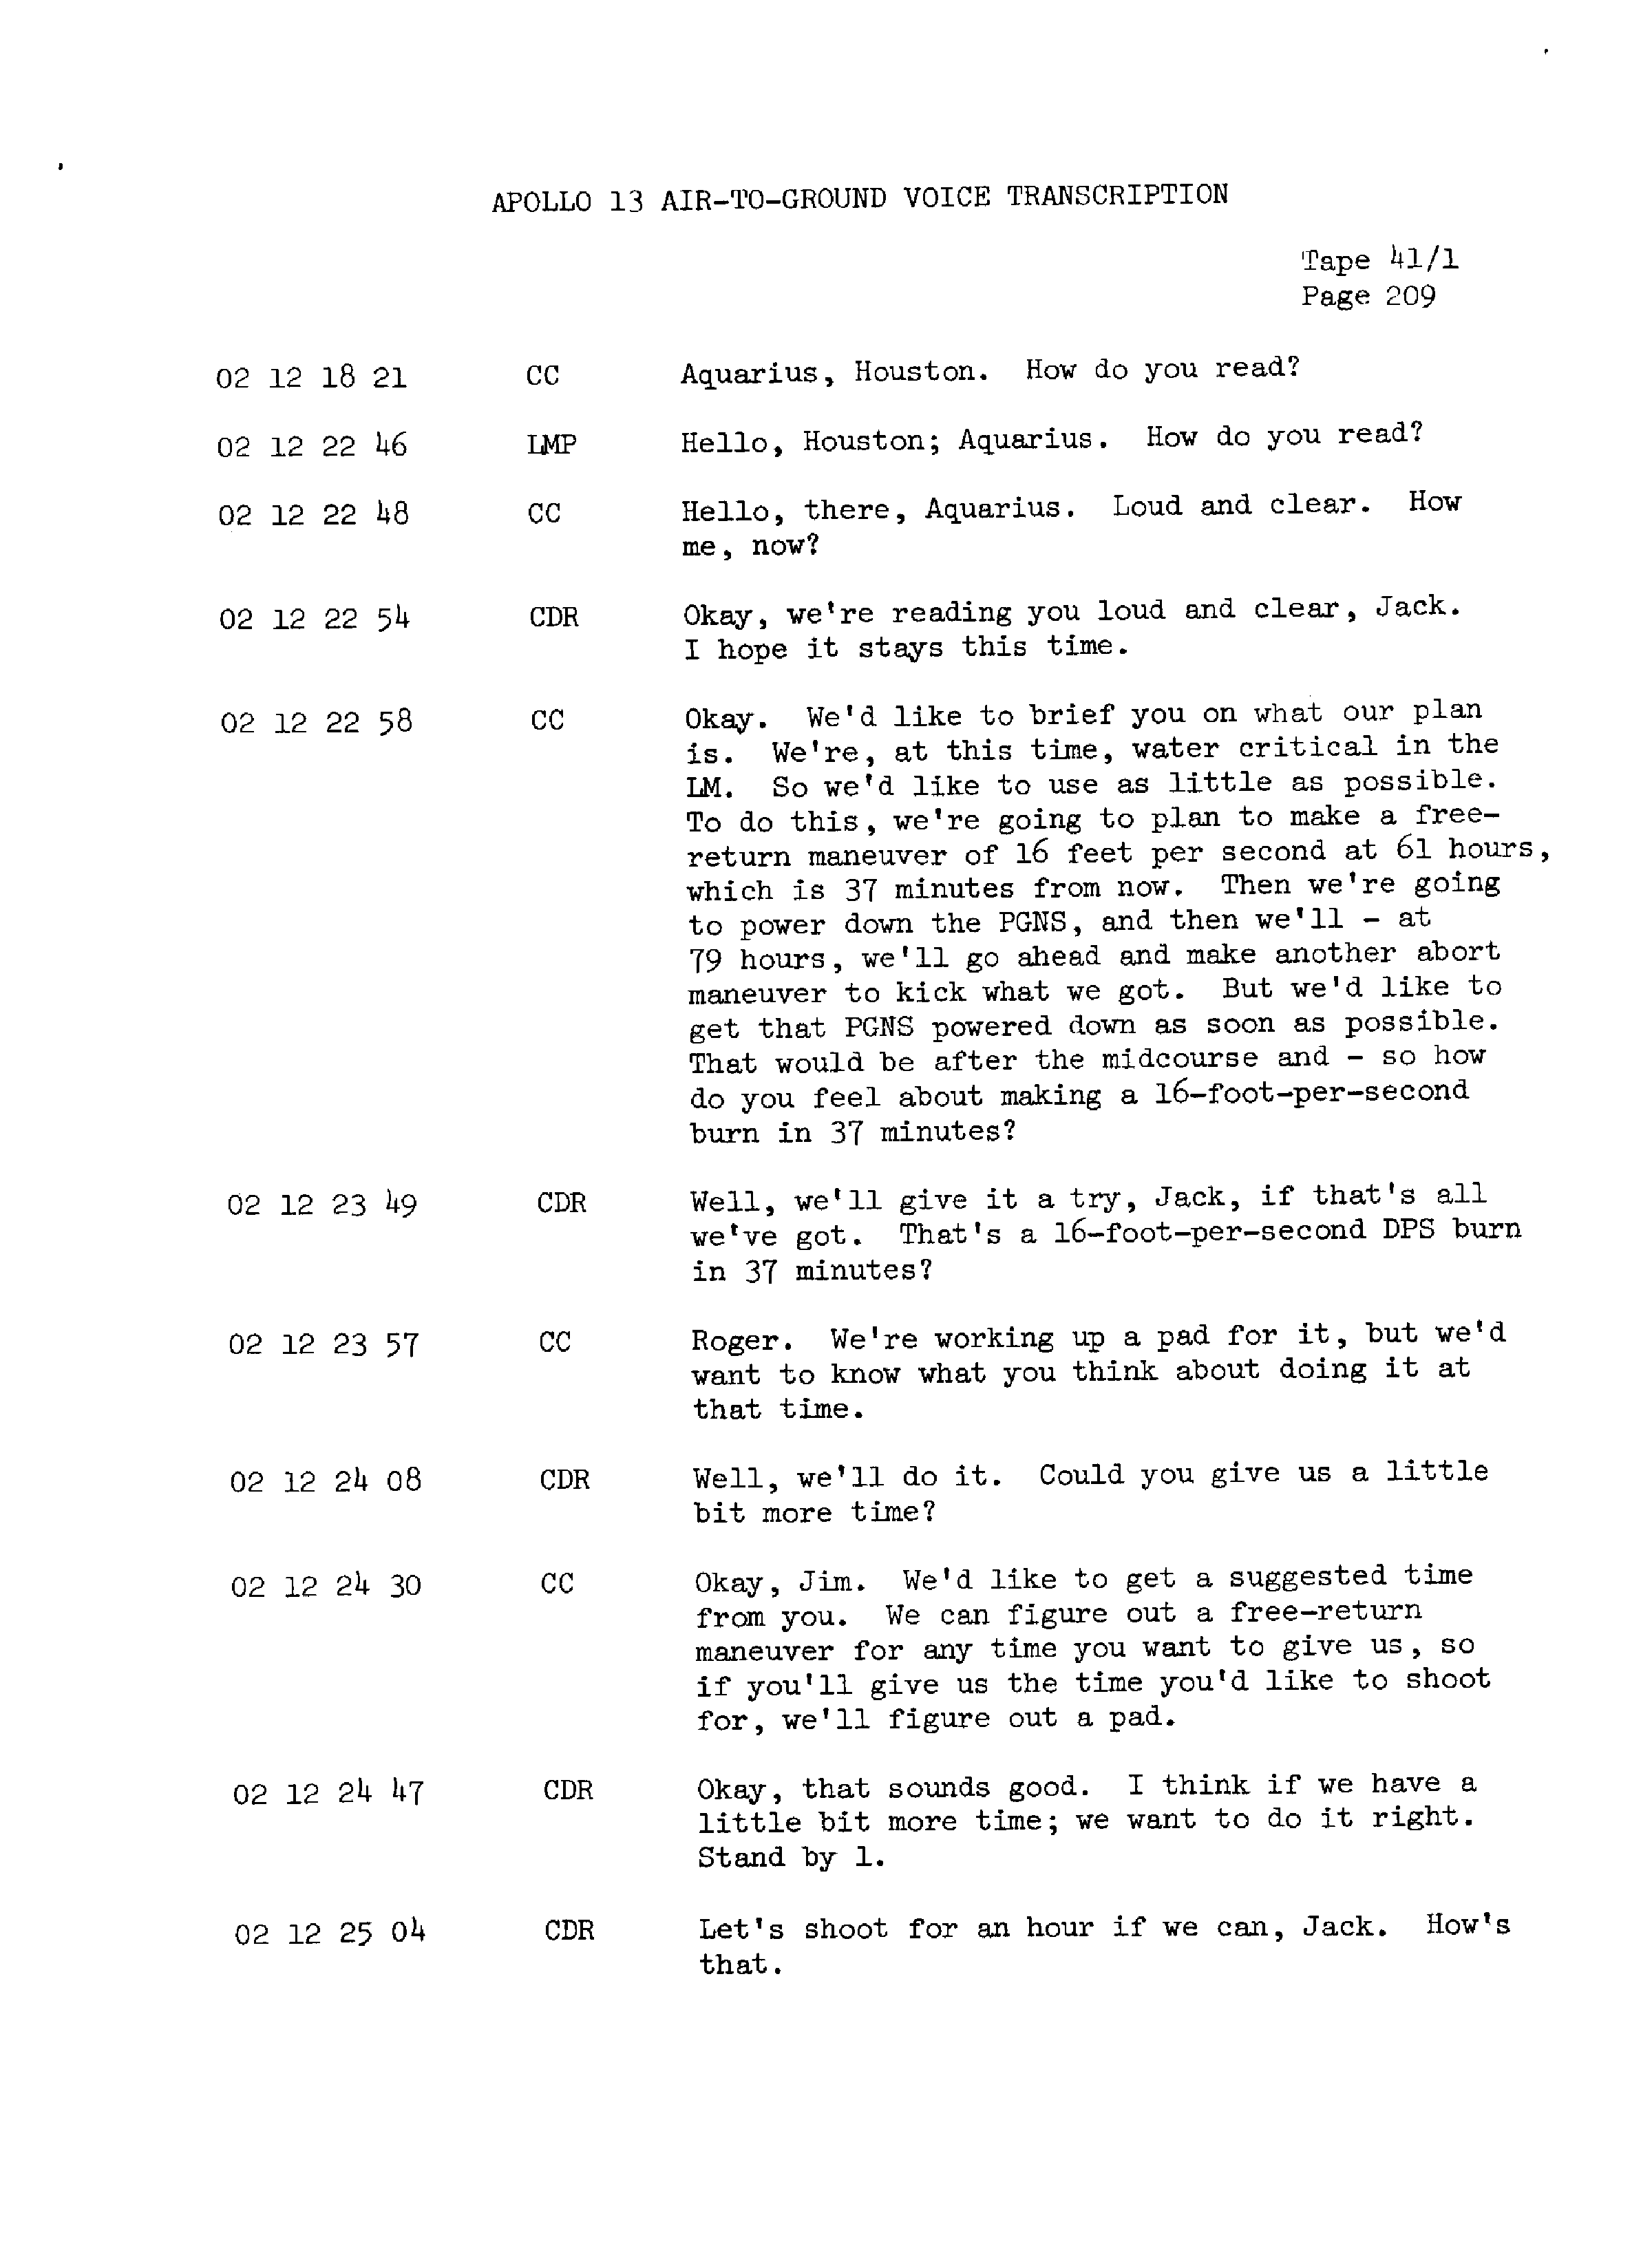 Page 216 of Apollo 13’s original transcript